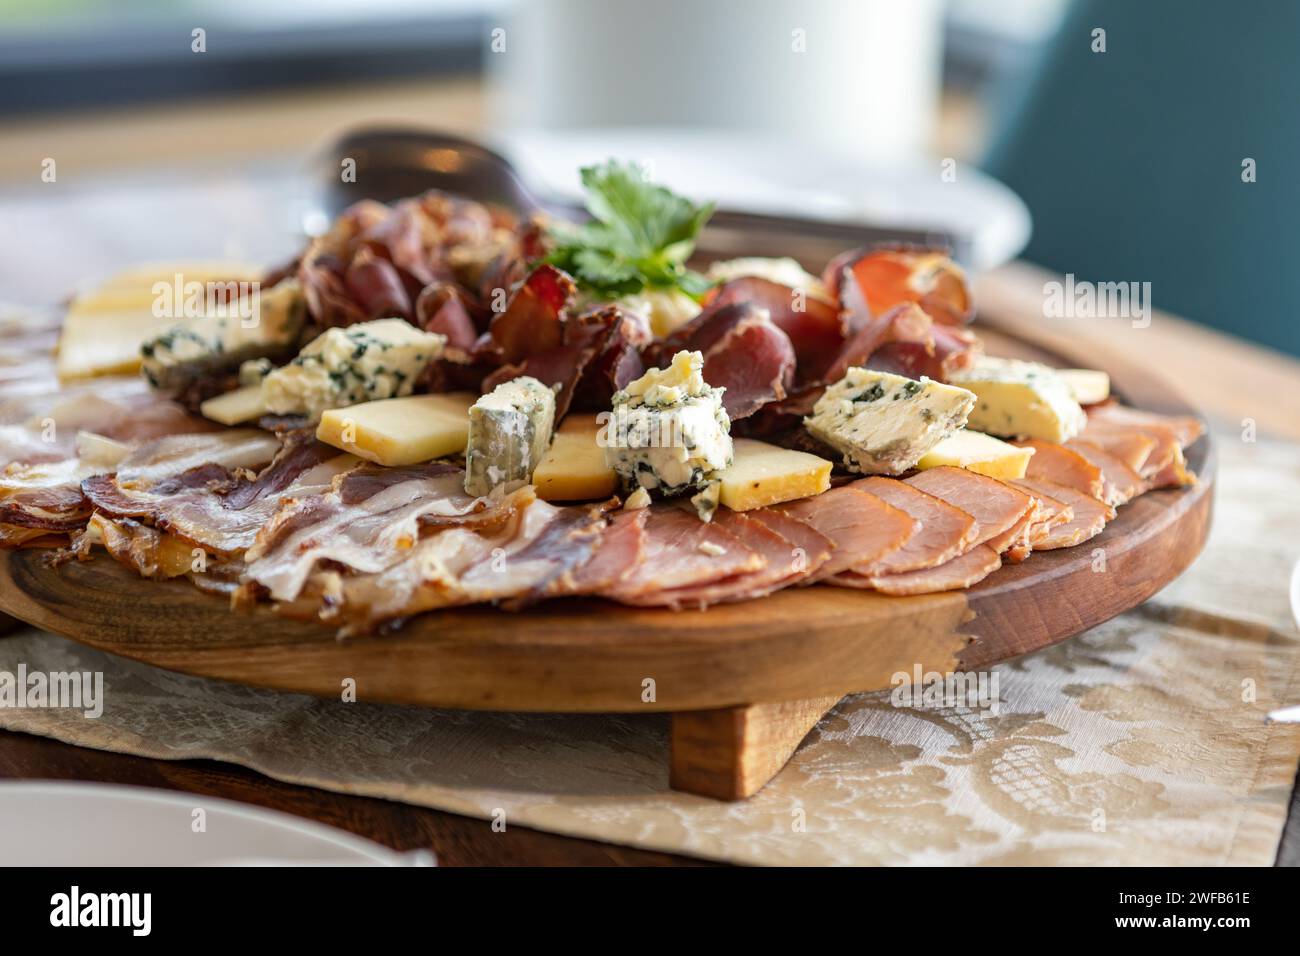 Une planche à découper en bois portant un arrangement délicieux de viandes et fromages assortis. Banque D'Images